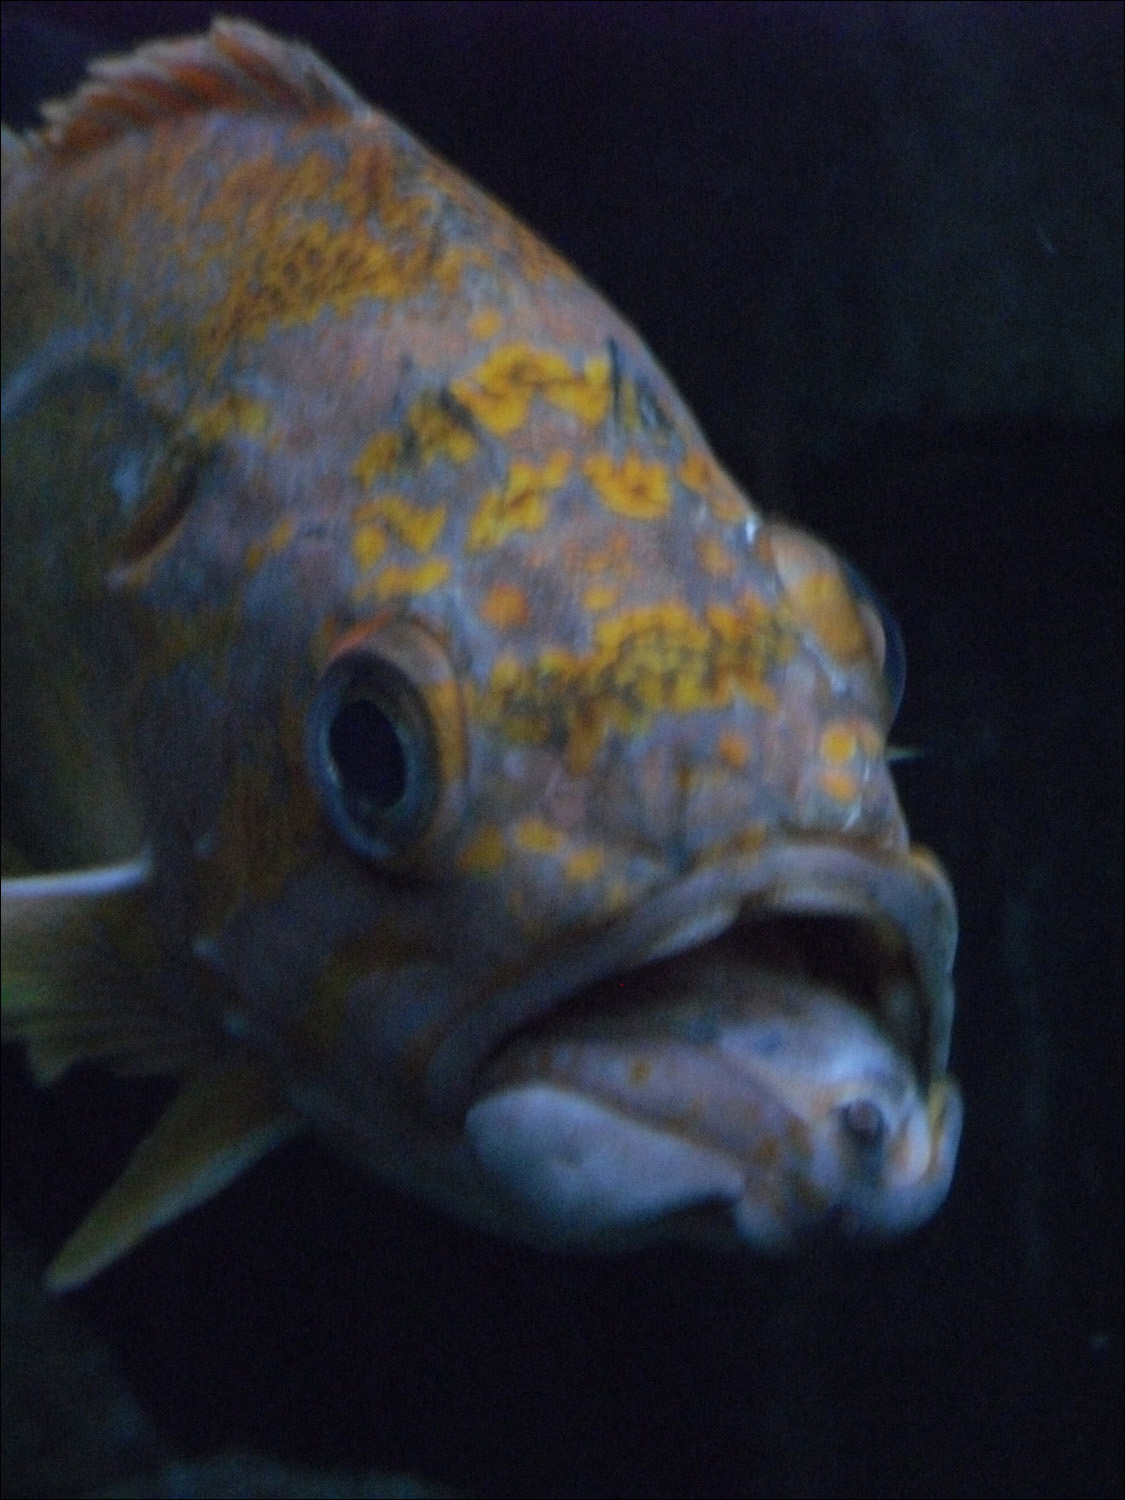 Newport, OR- Oregon Coast Aquarium